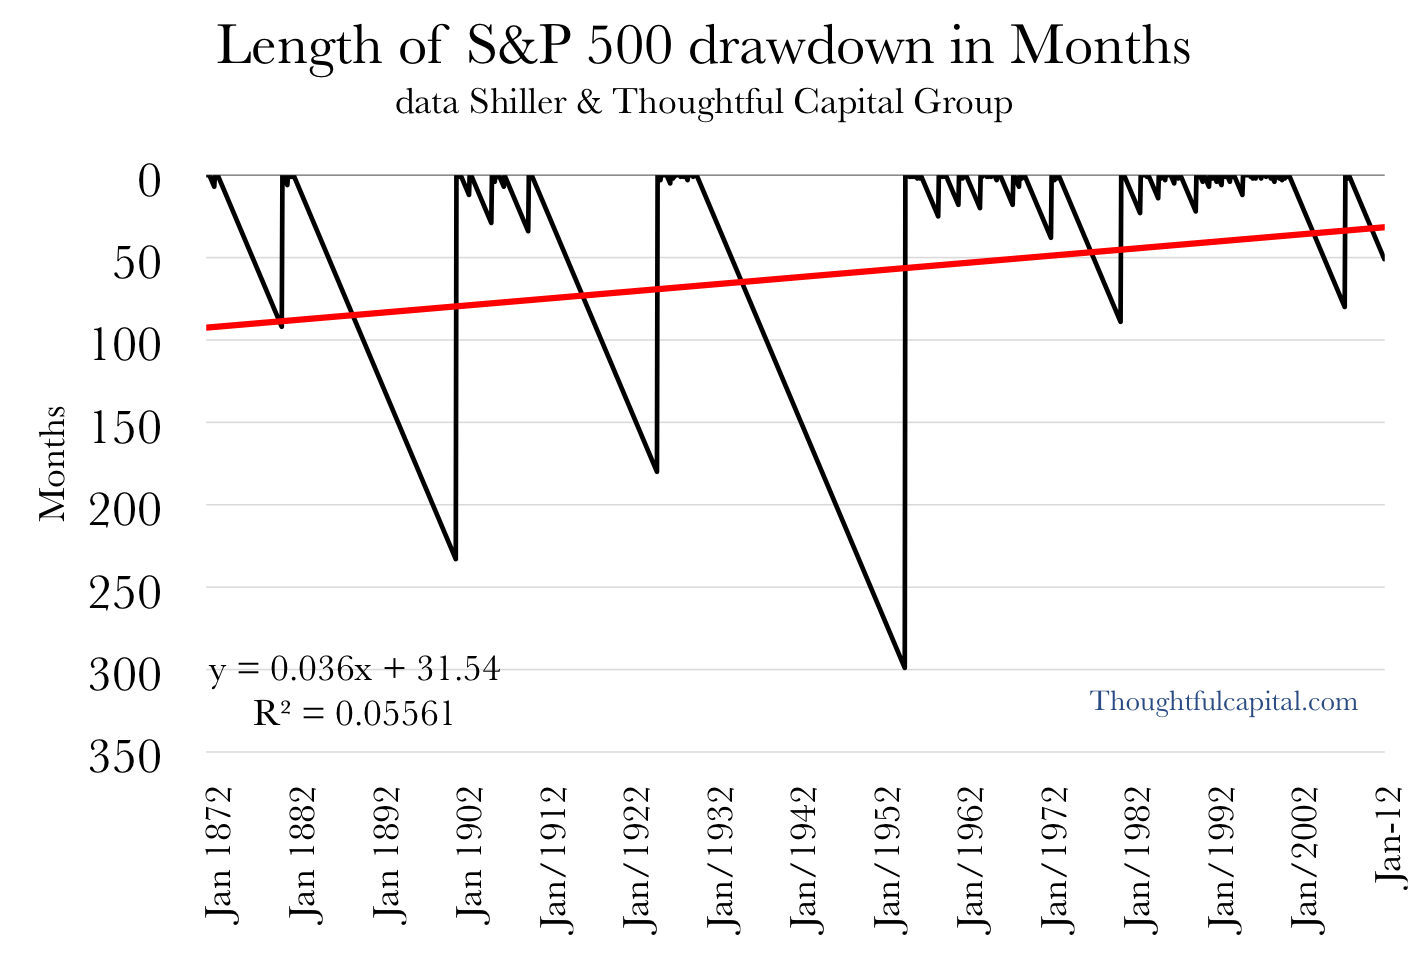  S&P 500 drawdowns in months 1871-2011